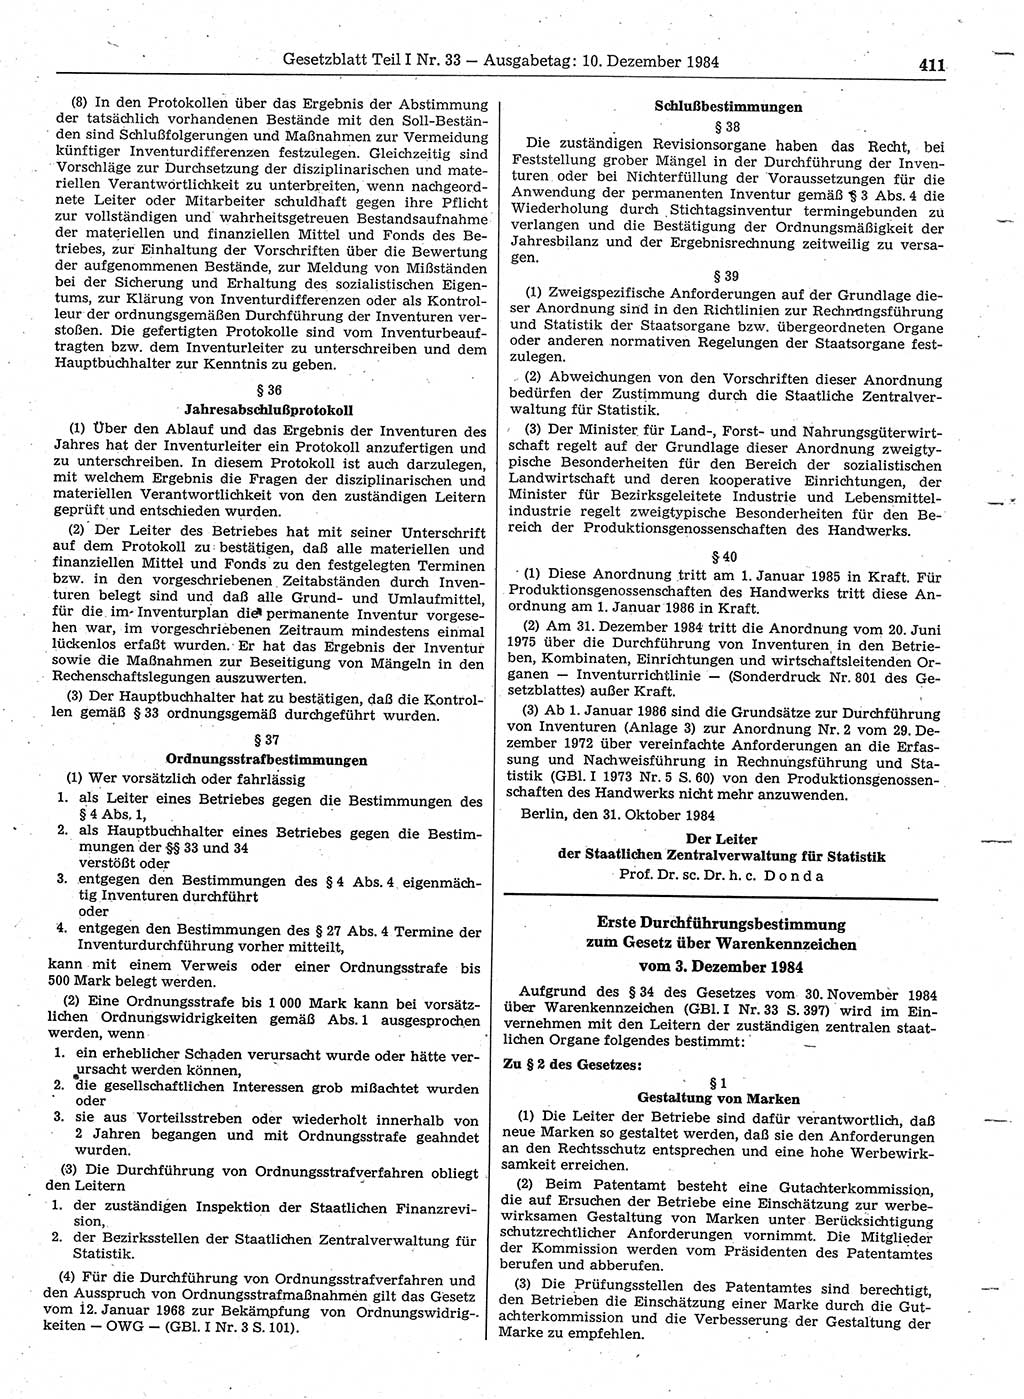 Gesetzblatt (GBl.) der Deutschen Demokratischen Republik (DDR) Teil Ⅰ 1984, Seite 411 (GBl. DDR Ⅰ 1984, S. 411)